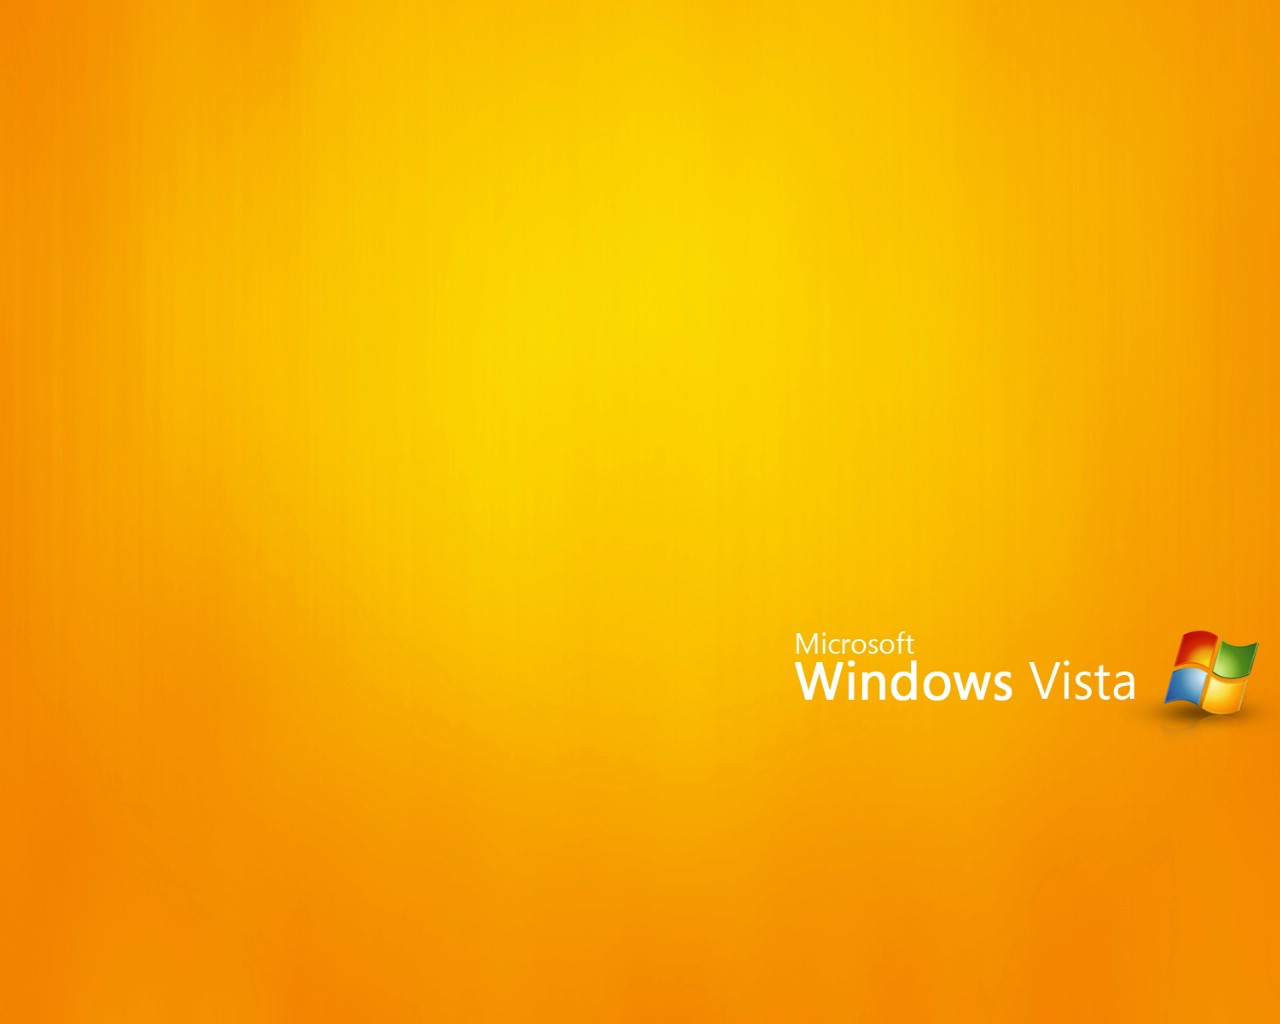 壁纸1280x1024Vista主题 3 16壁纸 Vista主题壁纸 Vista主题图片 Vista主题素材 系统壁纸 系统图库 系统图片素材桌面壁纸